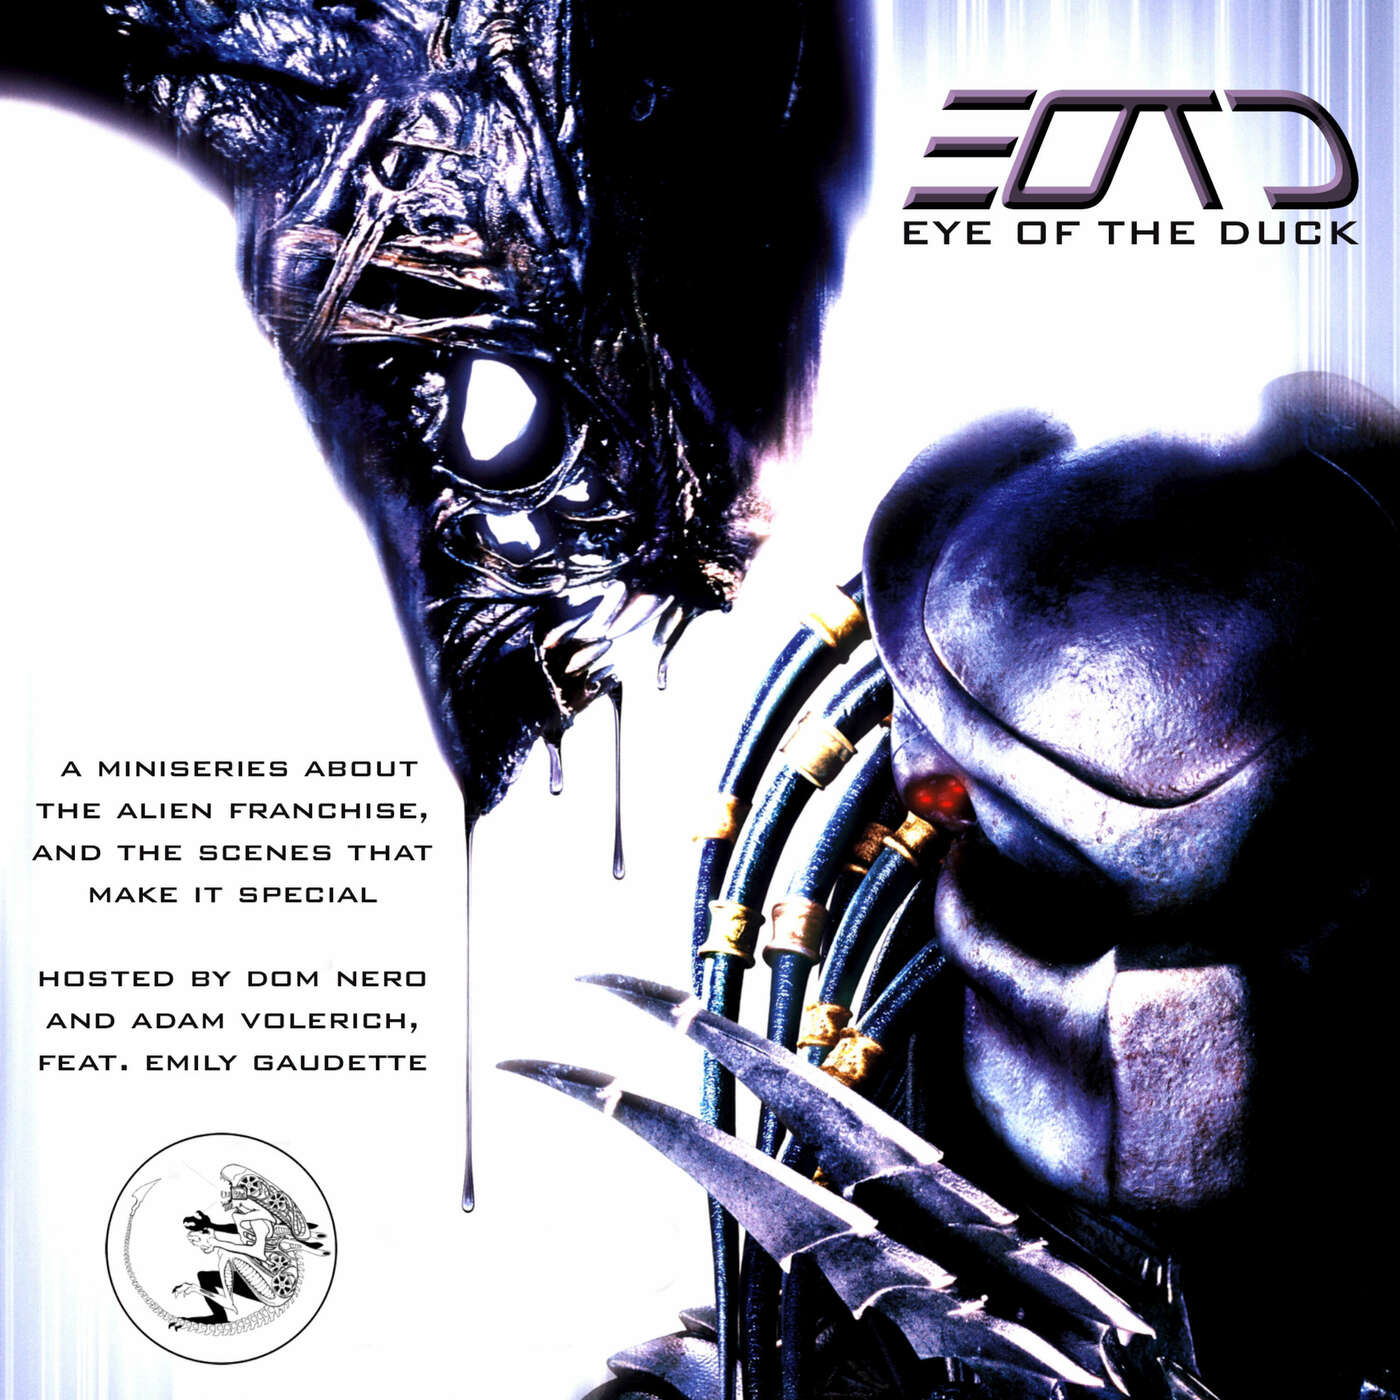 Alien vs. Predator (2004) with Emily Gaudette (SYFY)